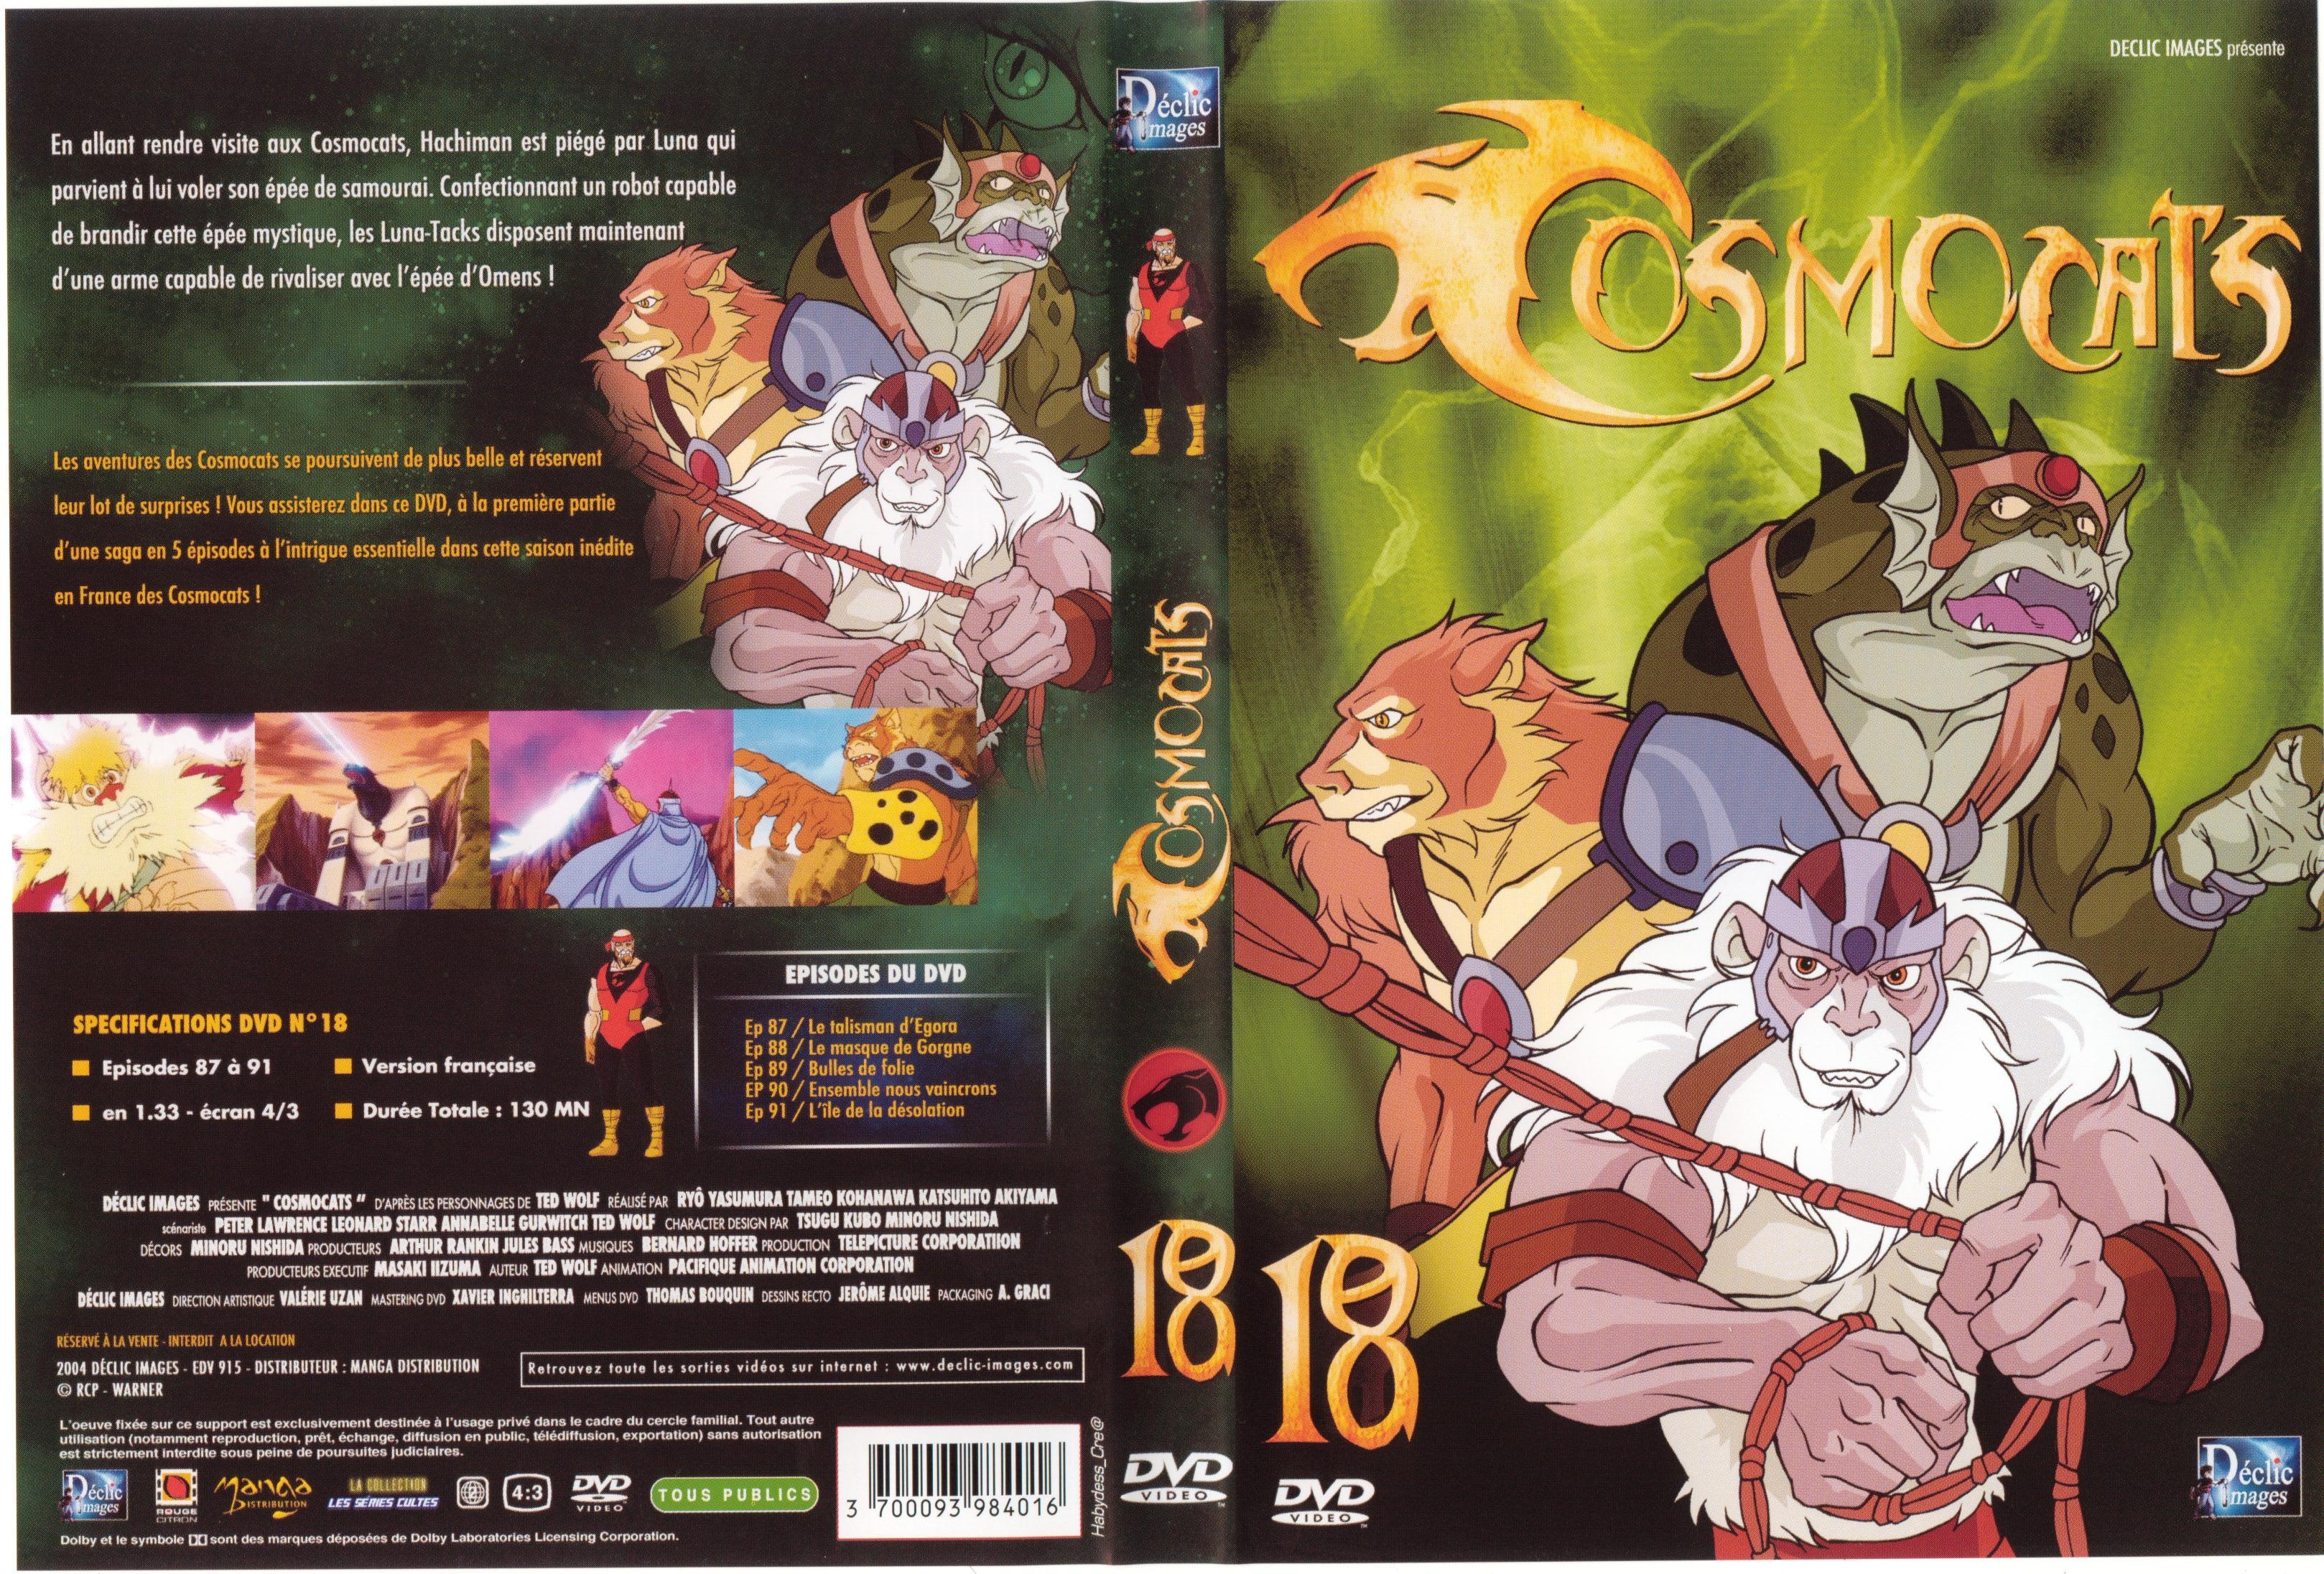 Jaquette DVD Cosmocats vol 18